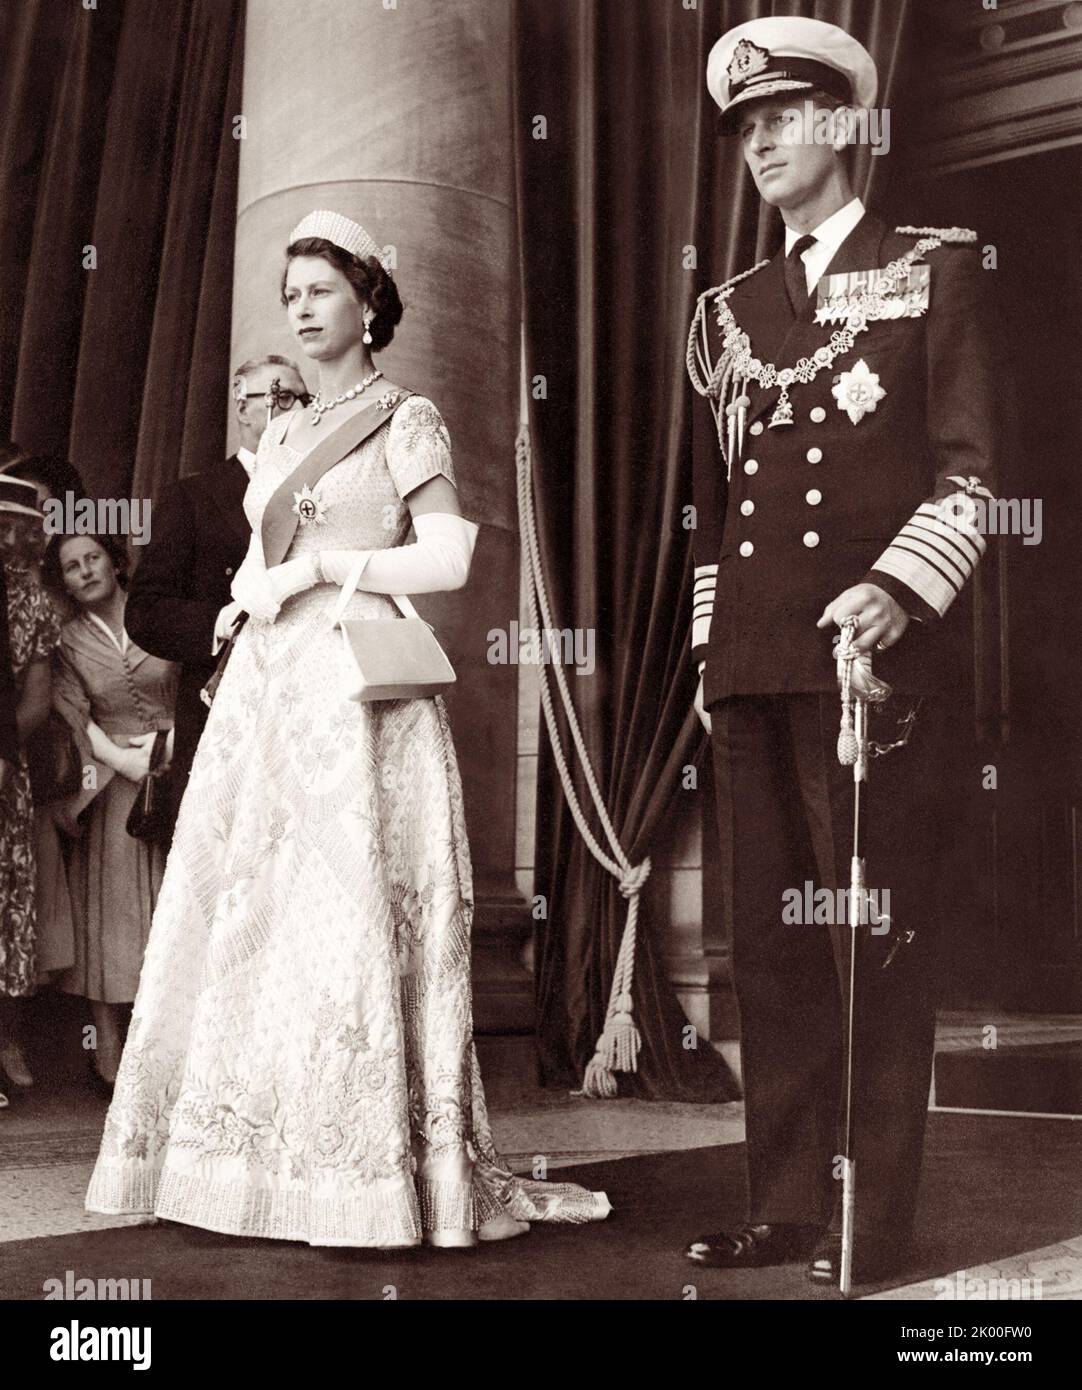 La reine Elizabeth II et le prince Philip, duc d'Édimbourg, en Nouvelle-Galles du Sud, lors de la tournée royale de février 1954 de la reine en Australie. Banque D'Images